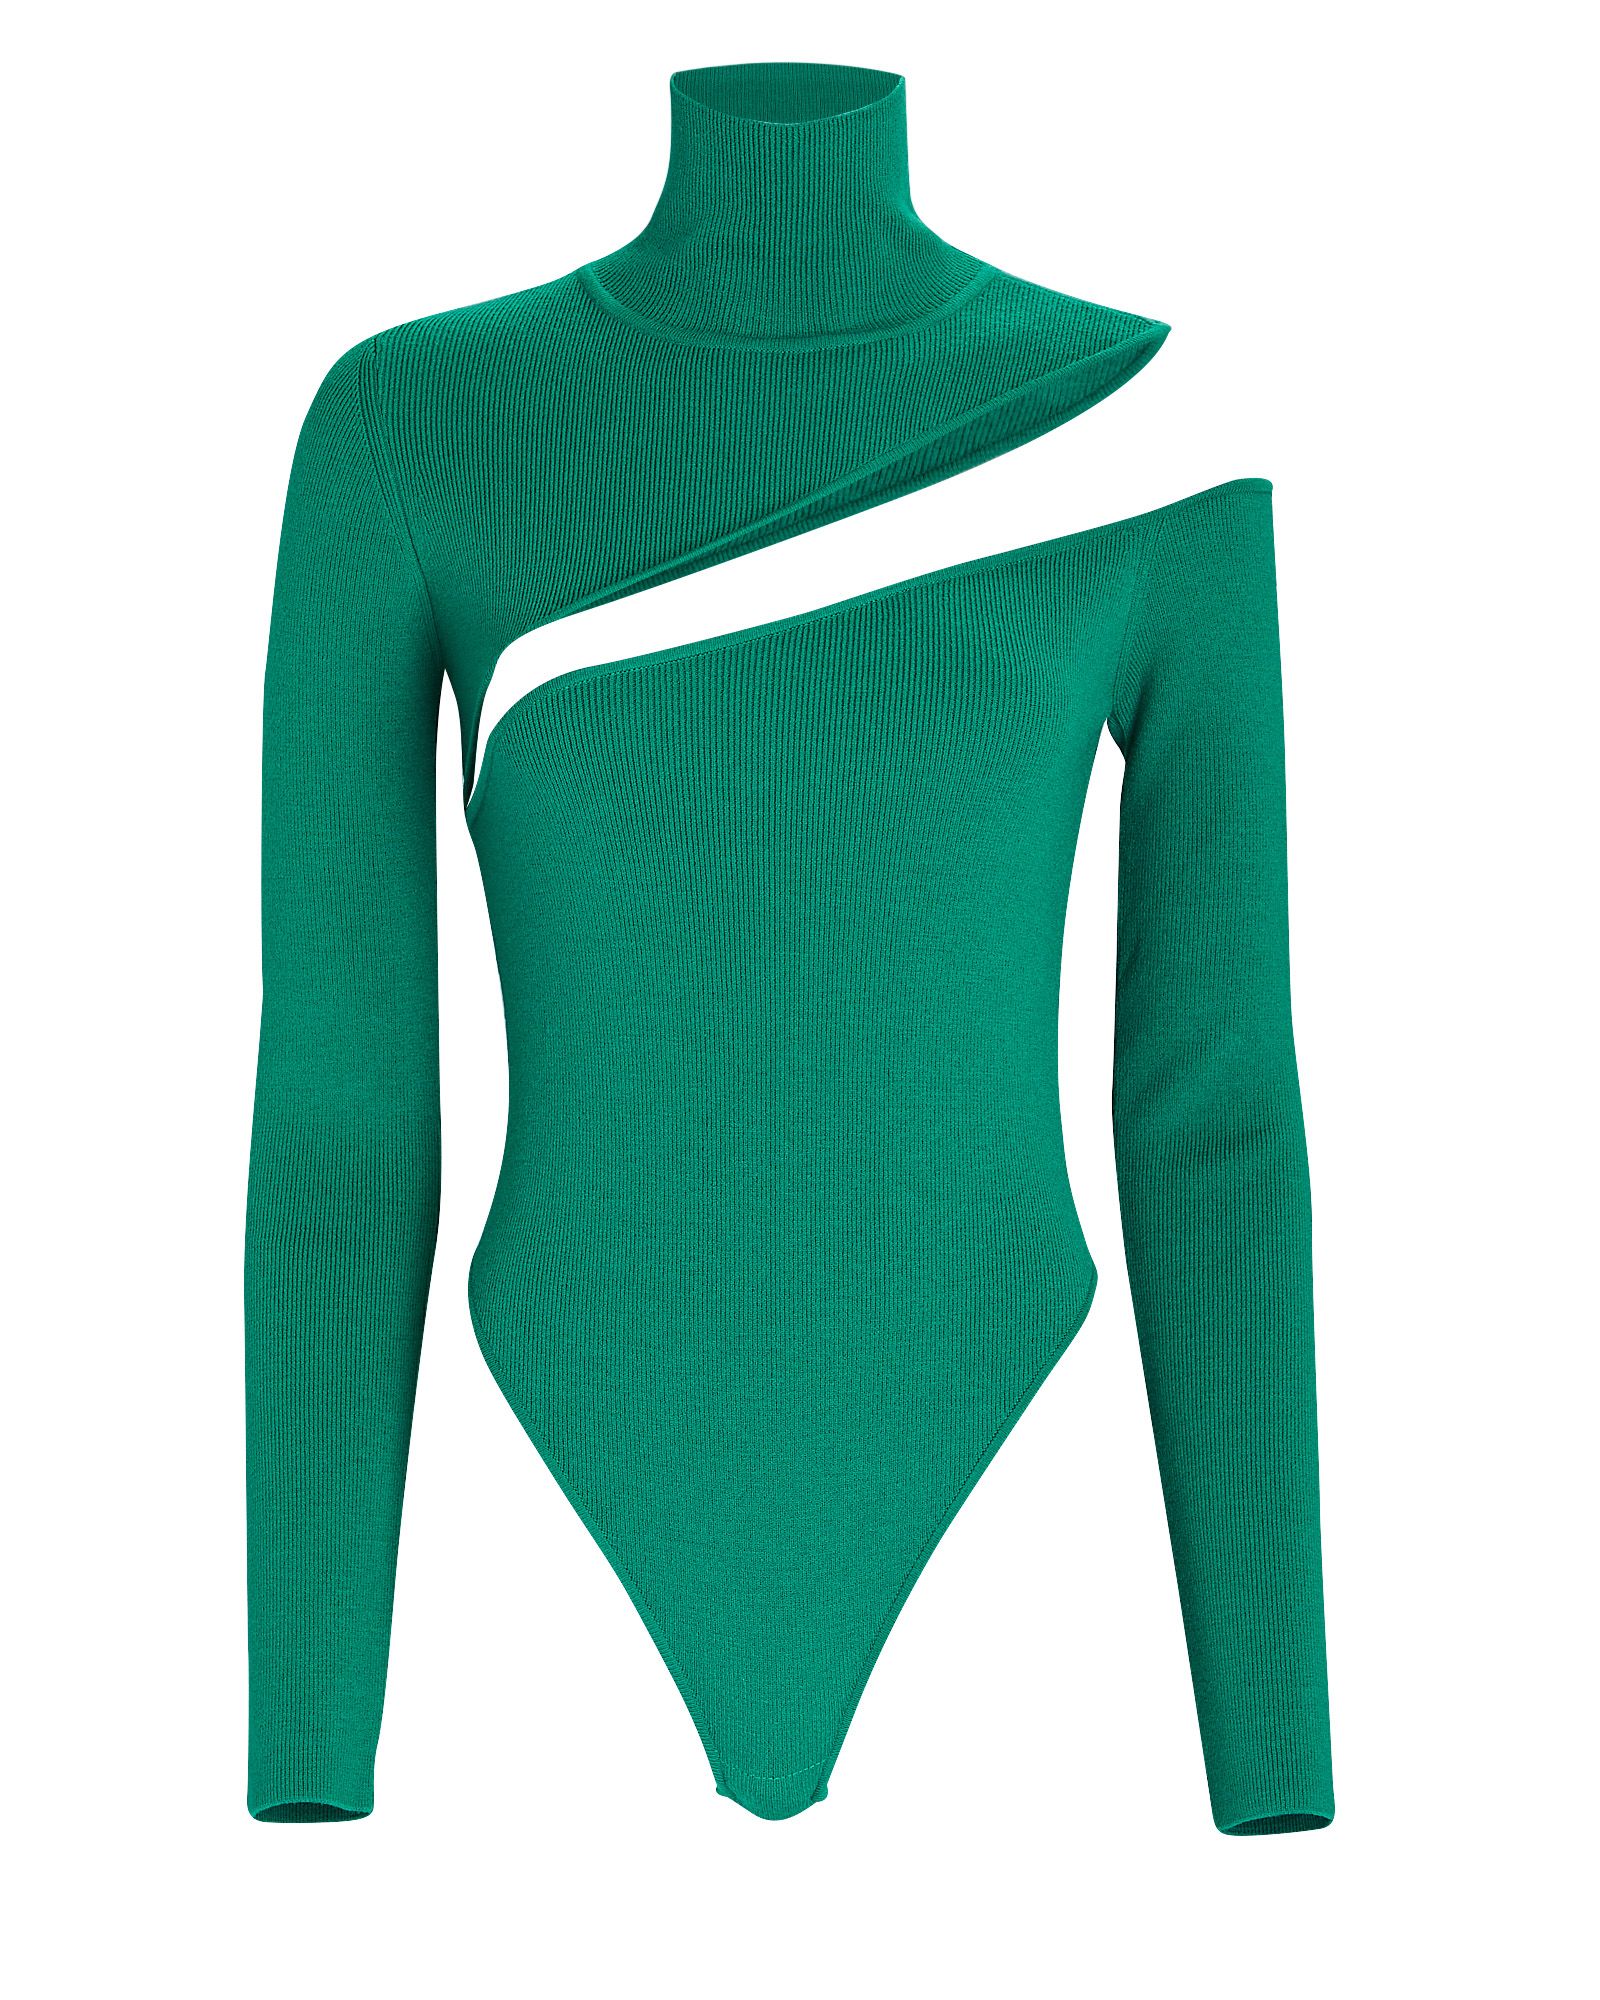 Gauge81 Teba Cut-Out Turtleneck Bodysuit, Emerald S | INTERMIX